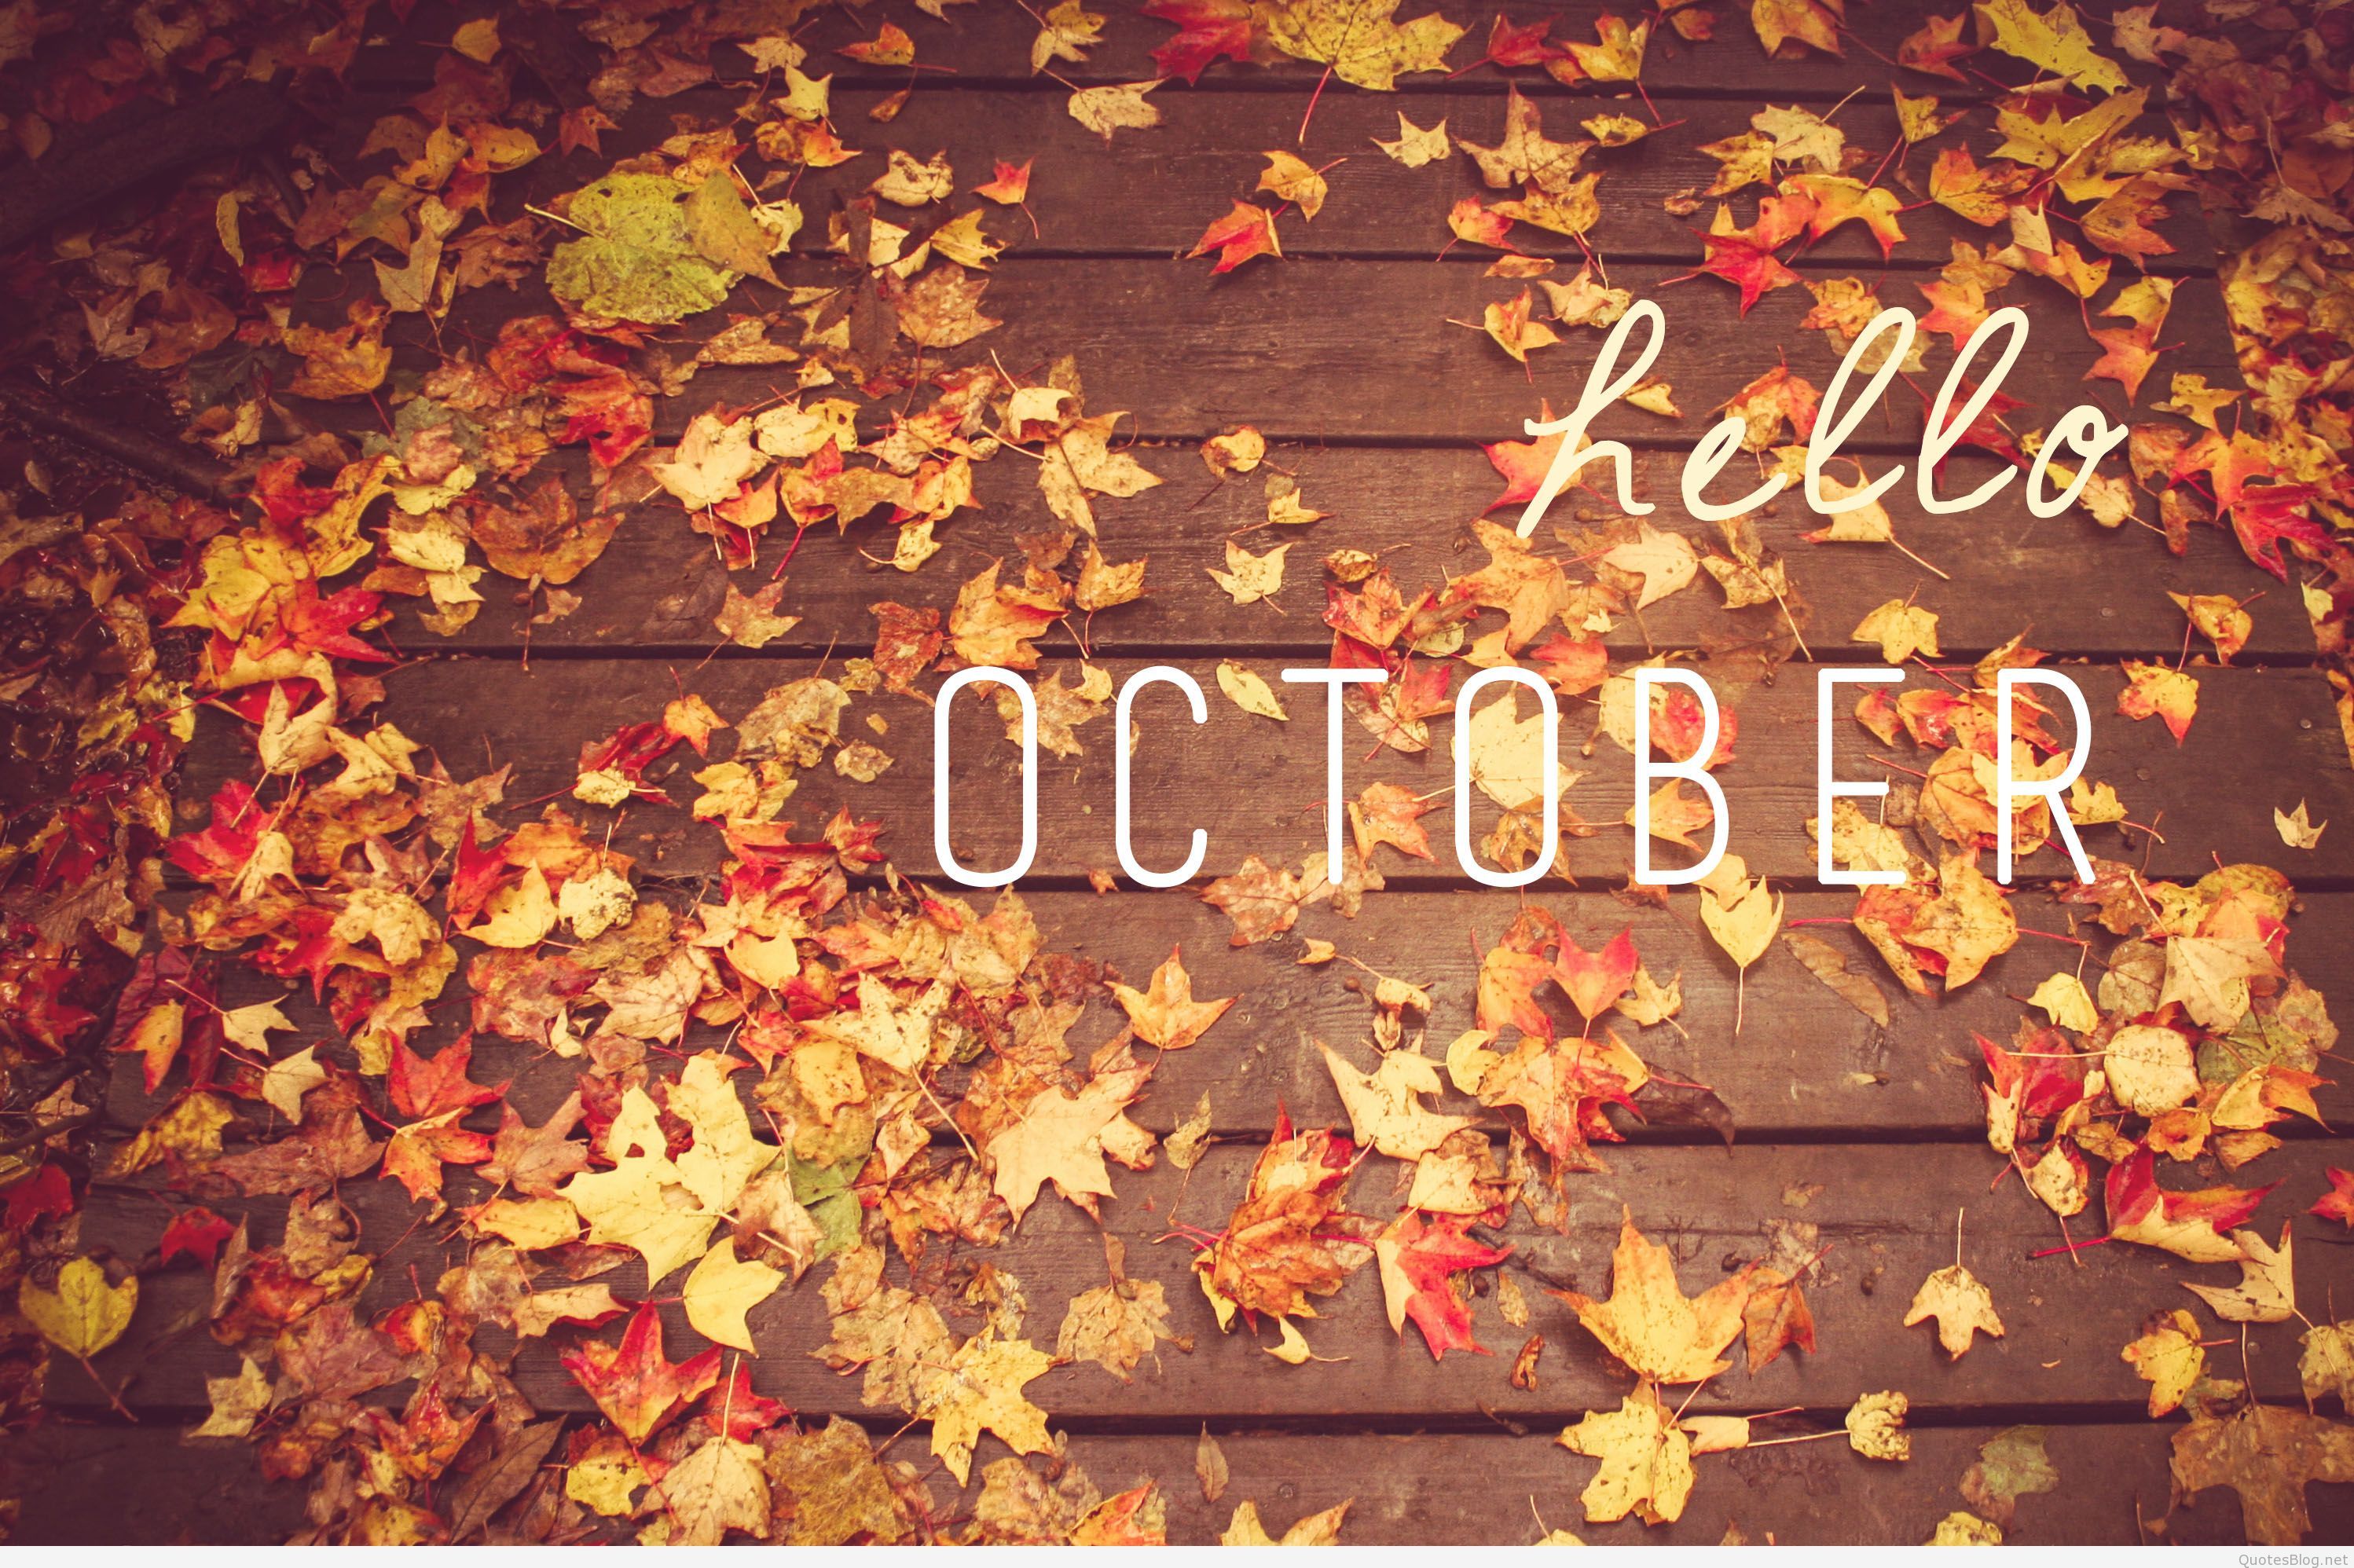 Hello october 2015 - October